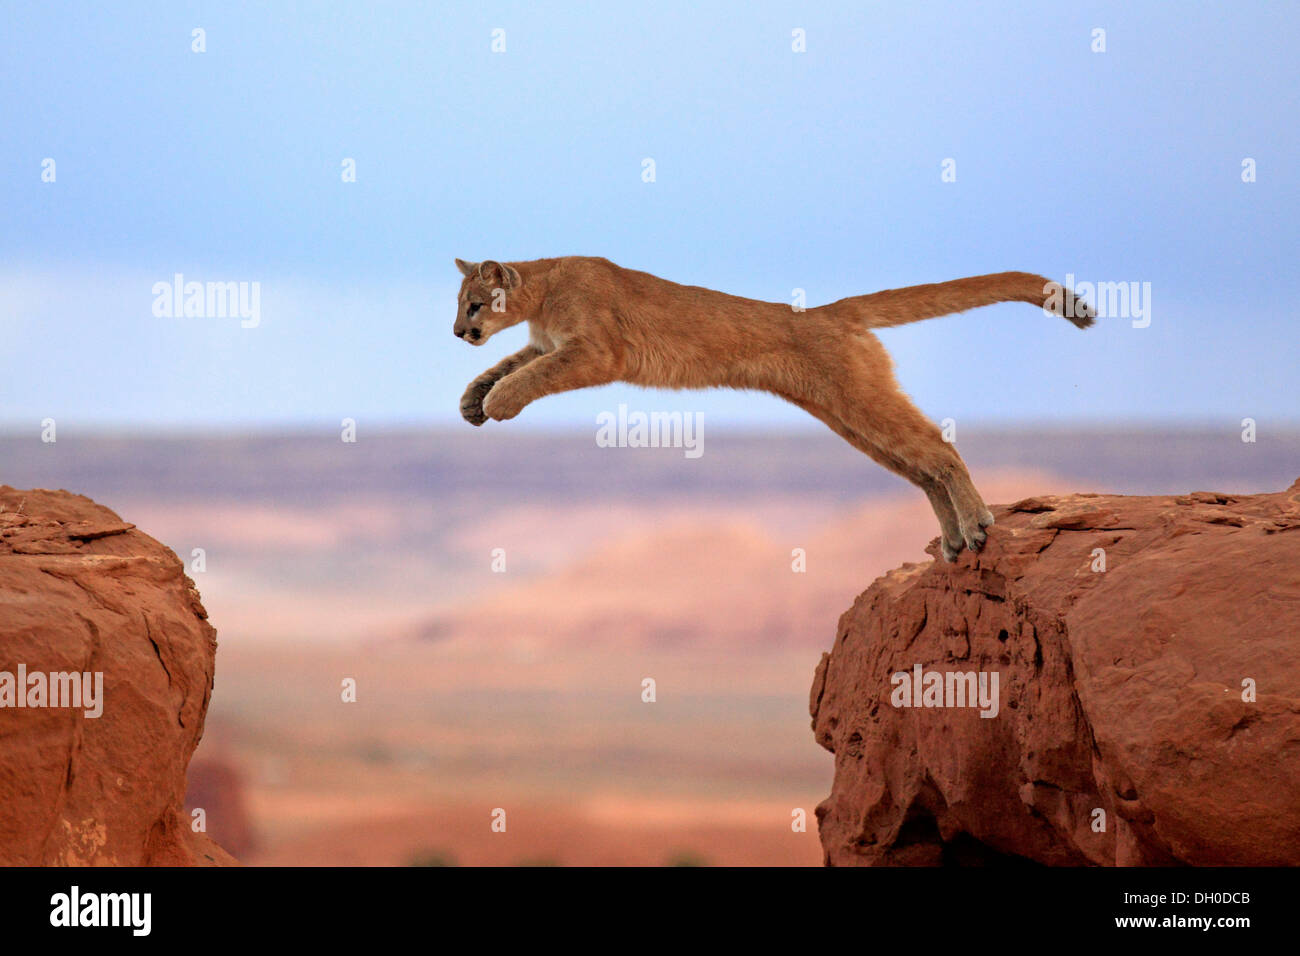 El Puma, El león de o puma (Puma concolor), adulto, saltando, cautivo, Monument Valley, la Meseta del Colorado, Utah, Estados Unidos Fotografía de stock - Alamy